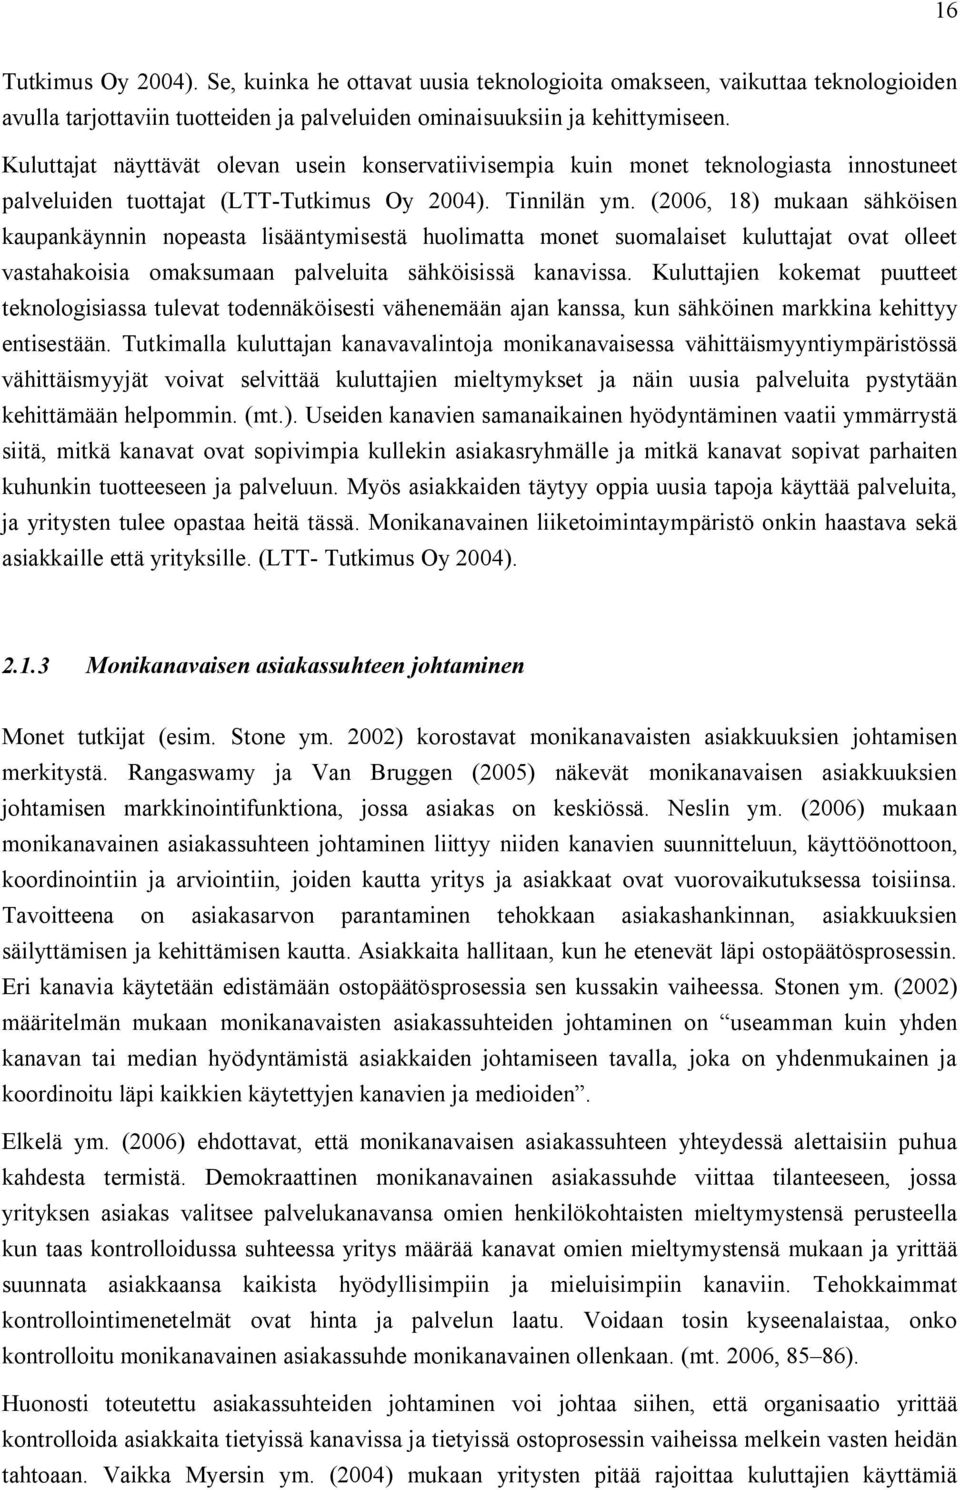 (2006, 18) mukaan sähköisen kaupankäynnin nopeasta lisääntymisestä huolimatta monet suomalaiset kuluttajat ovat olleet vastahakoisia omaksumaan palveluita sähköisissä kanavissa.